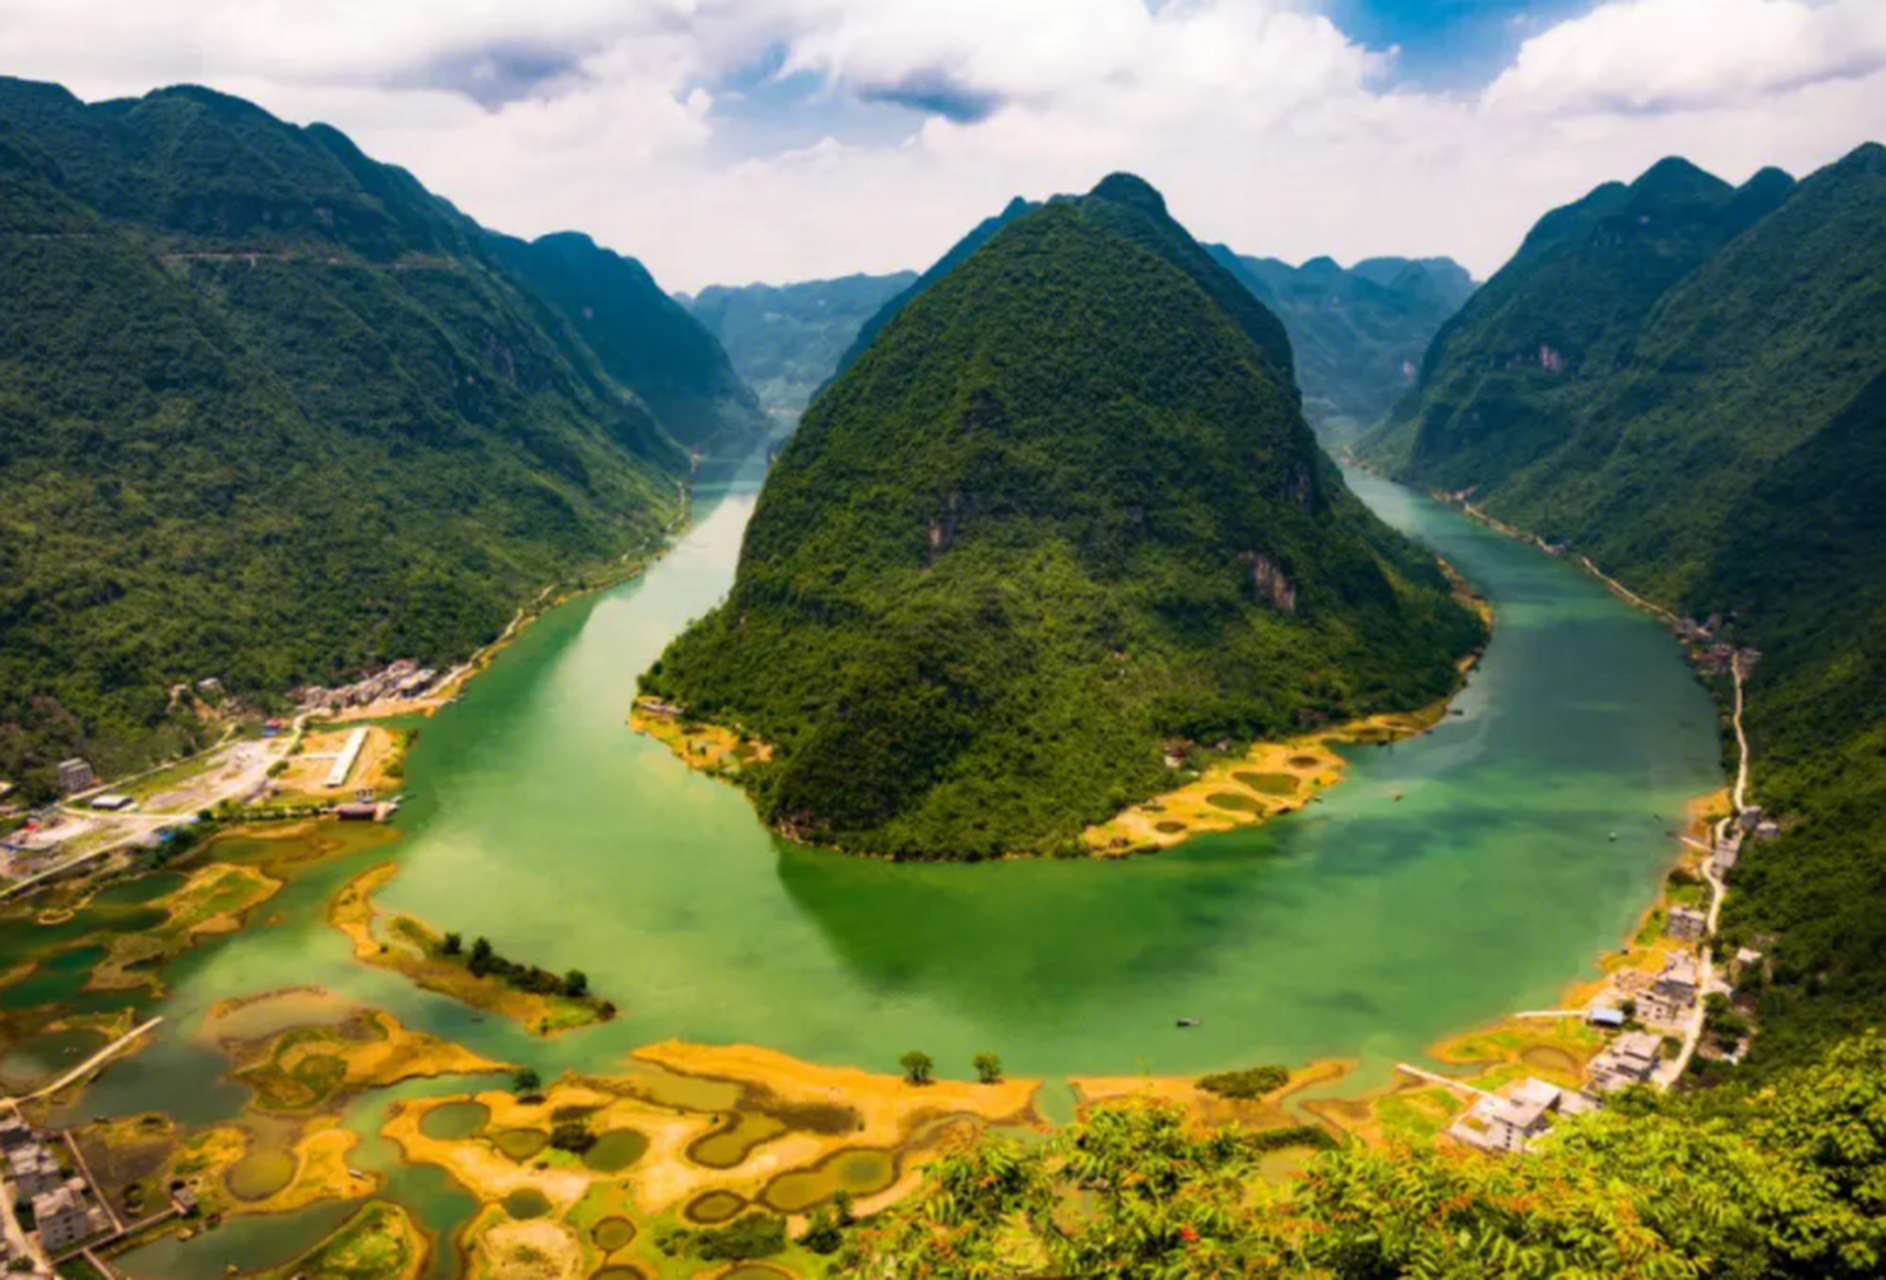 河池,位于中国广西壮族自治区,是一座充满自然美景和丰富人文历史的